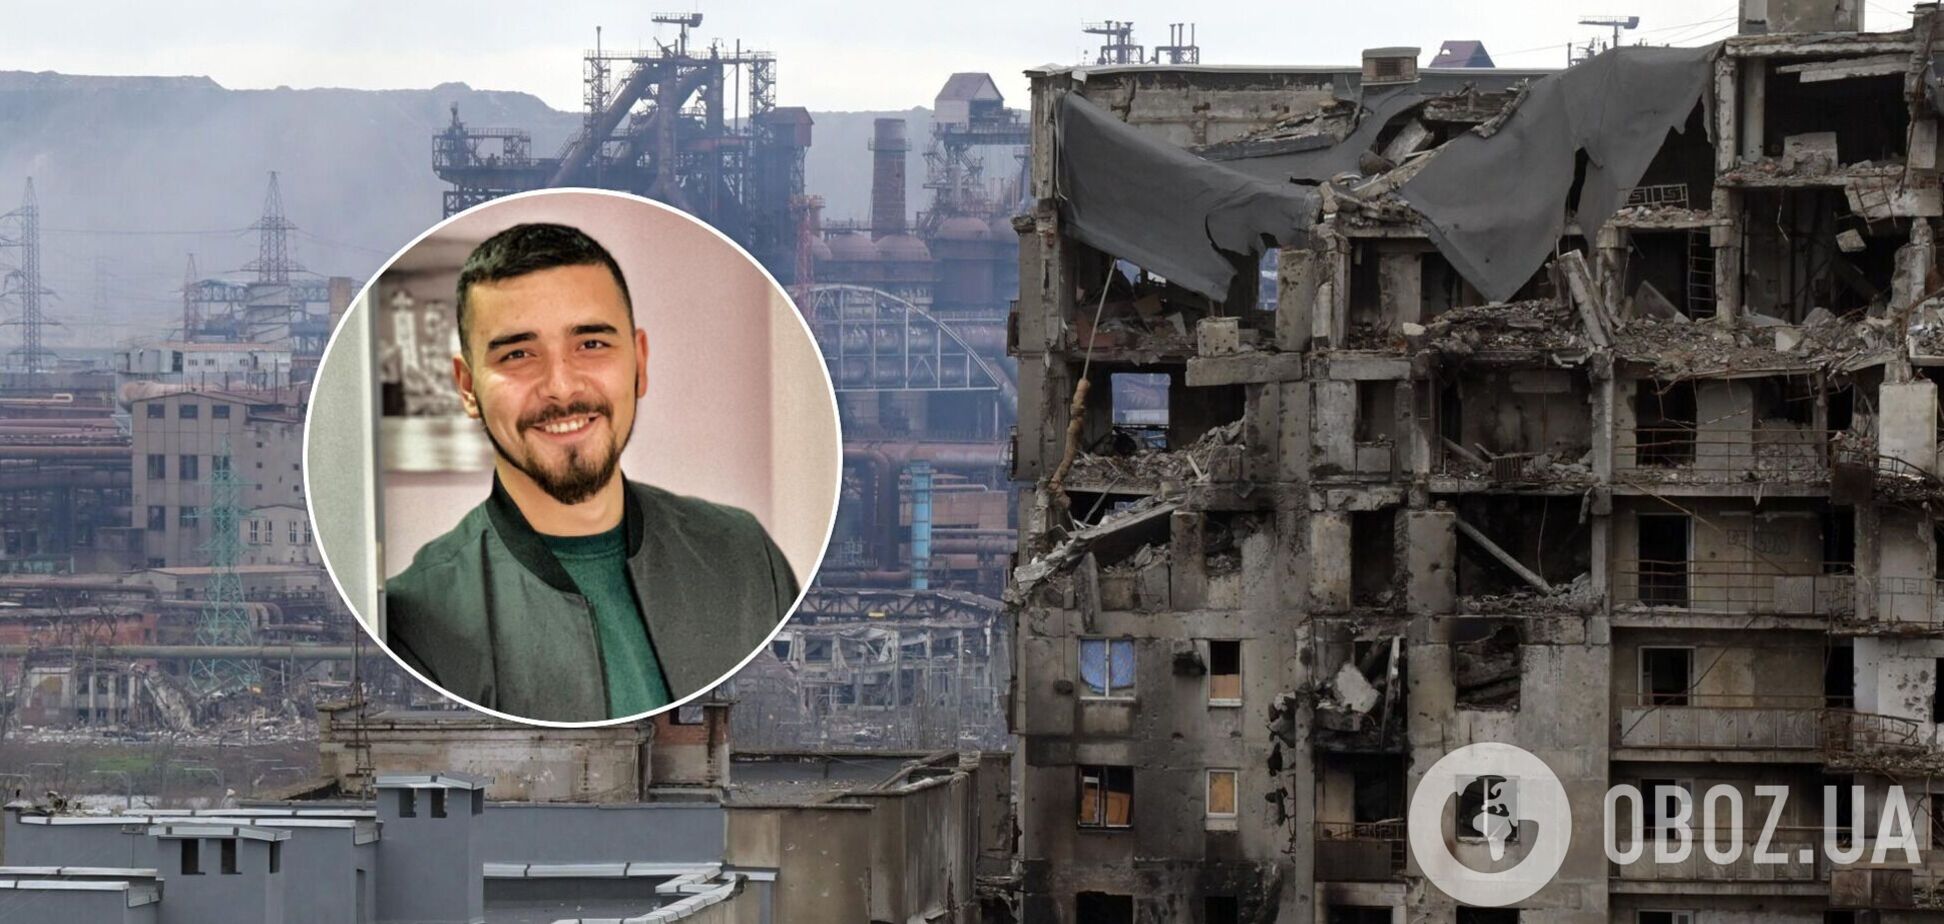 'Не сломаюсь никогда!' Военный медик 'Азова' показал сильное фото из Мариуполя